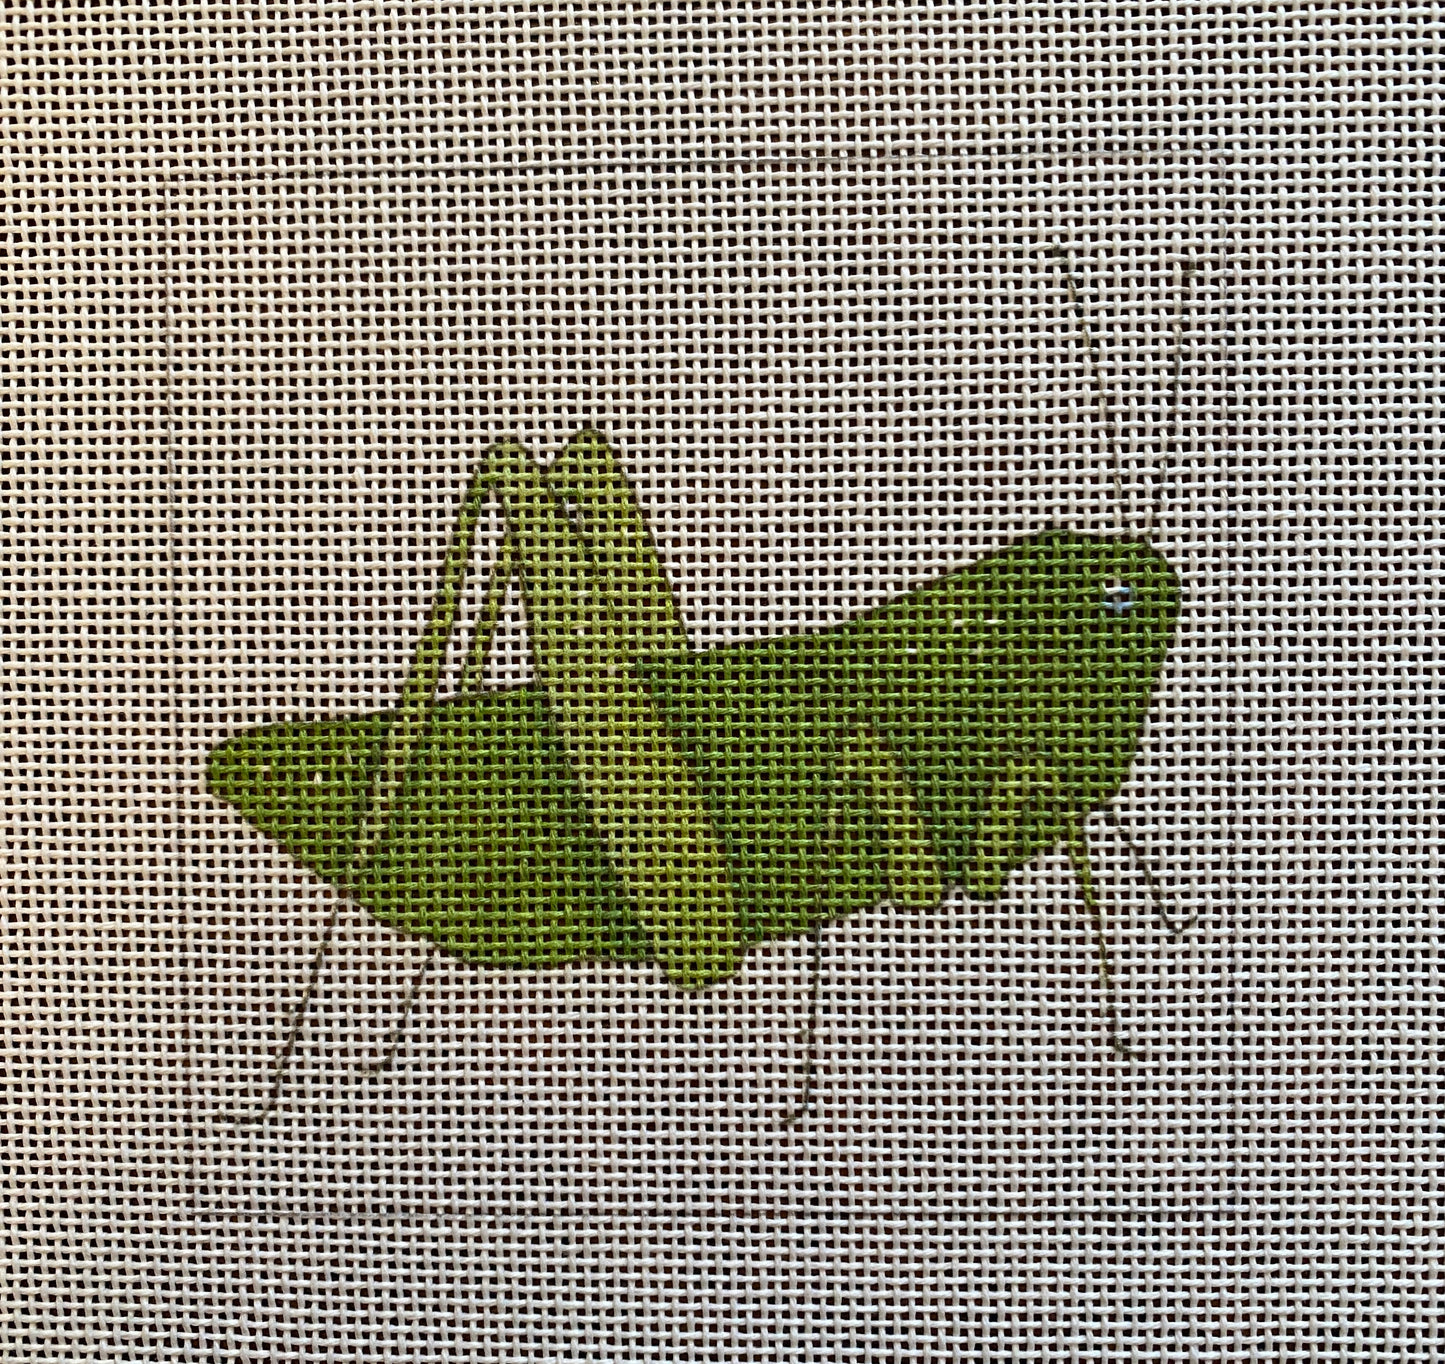 Grasshopper SF83